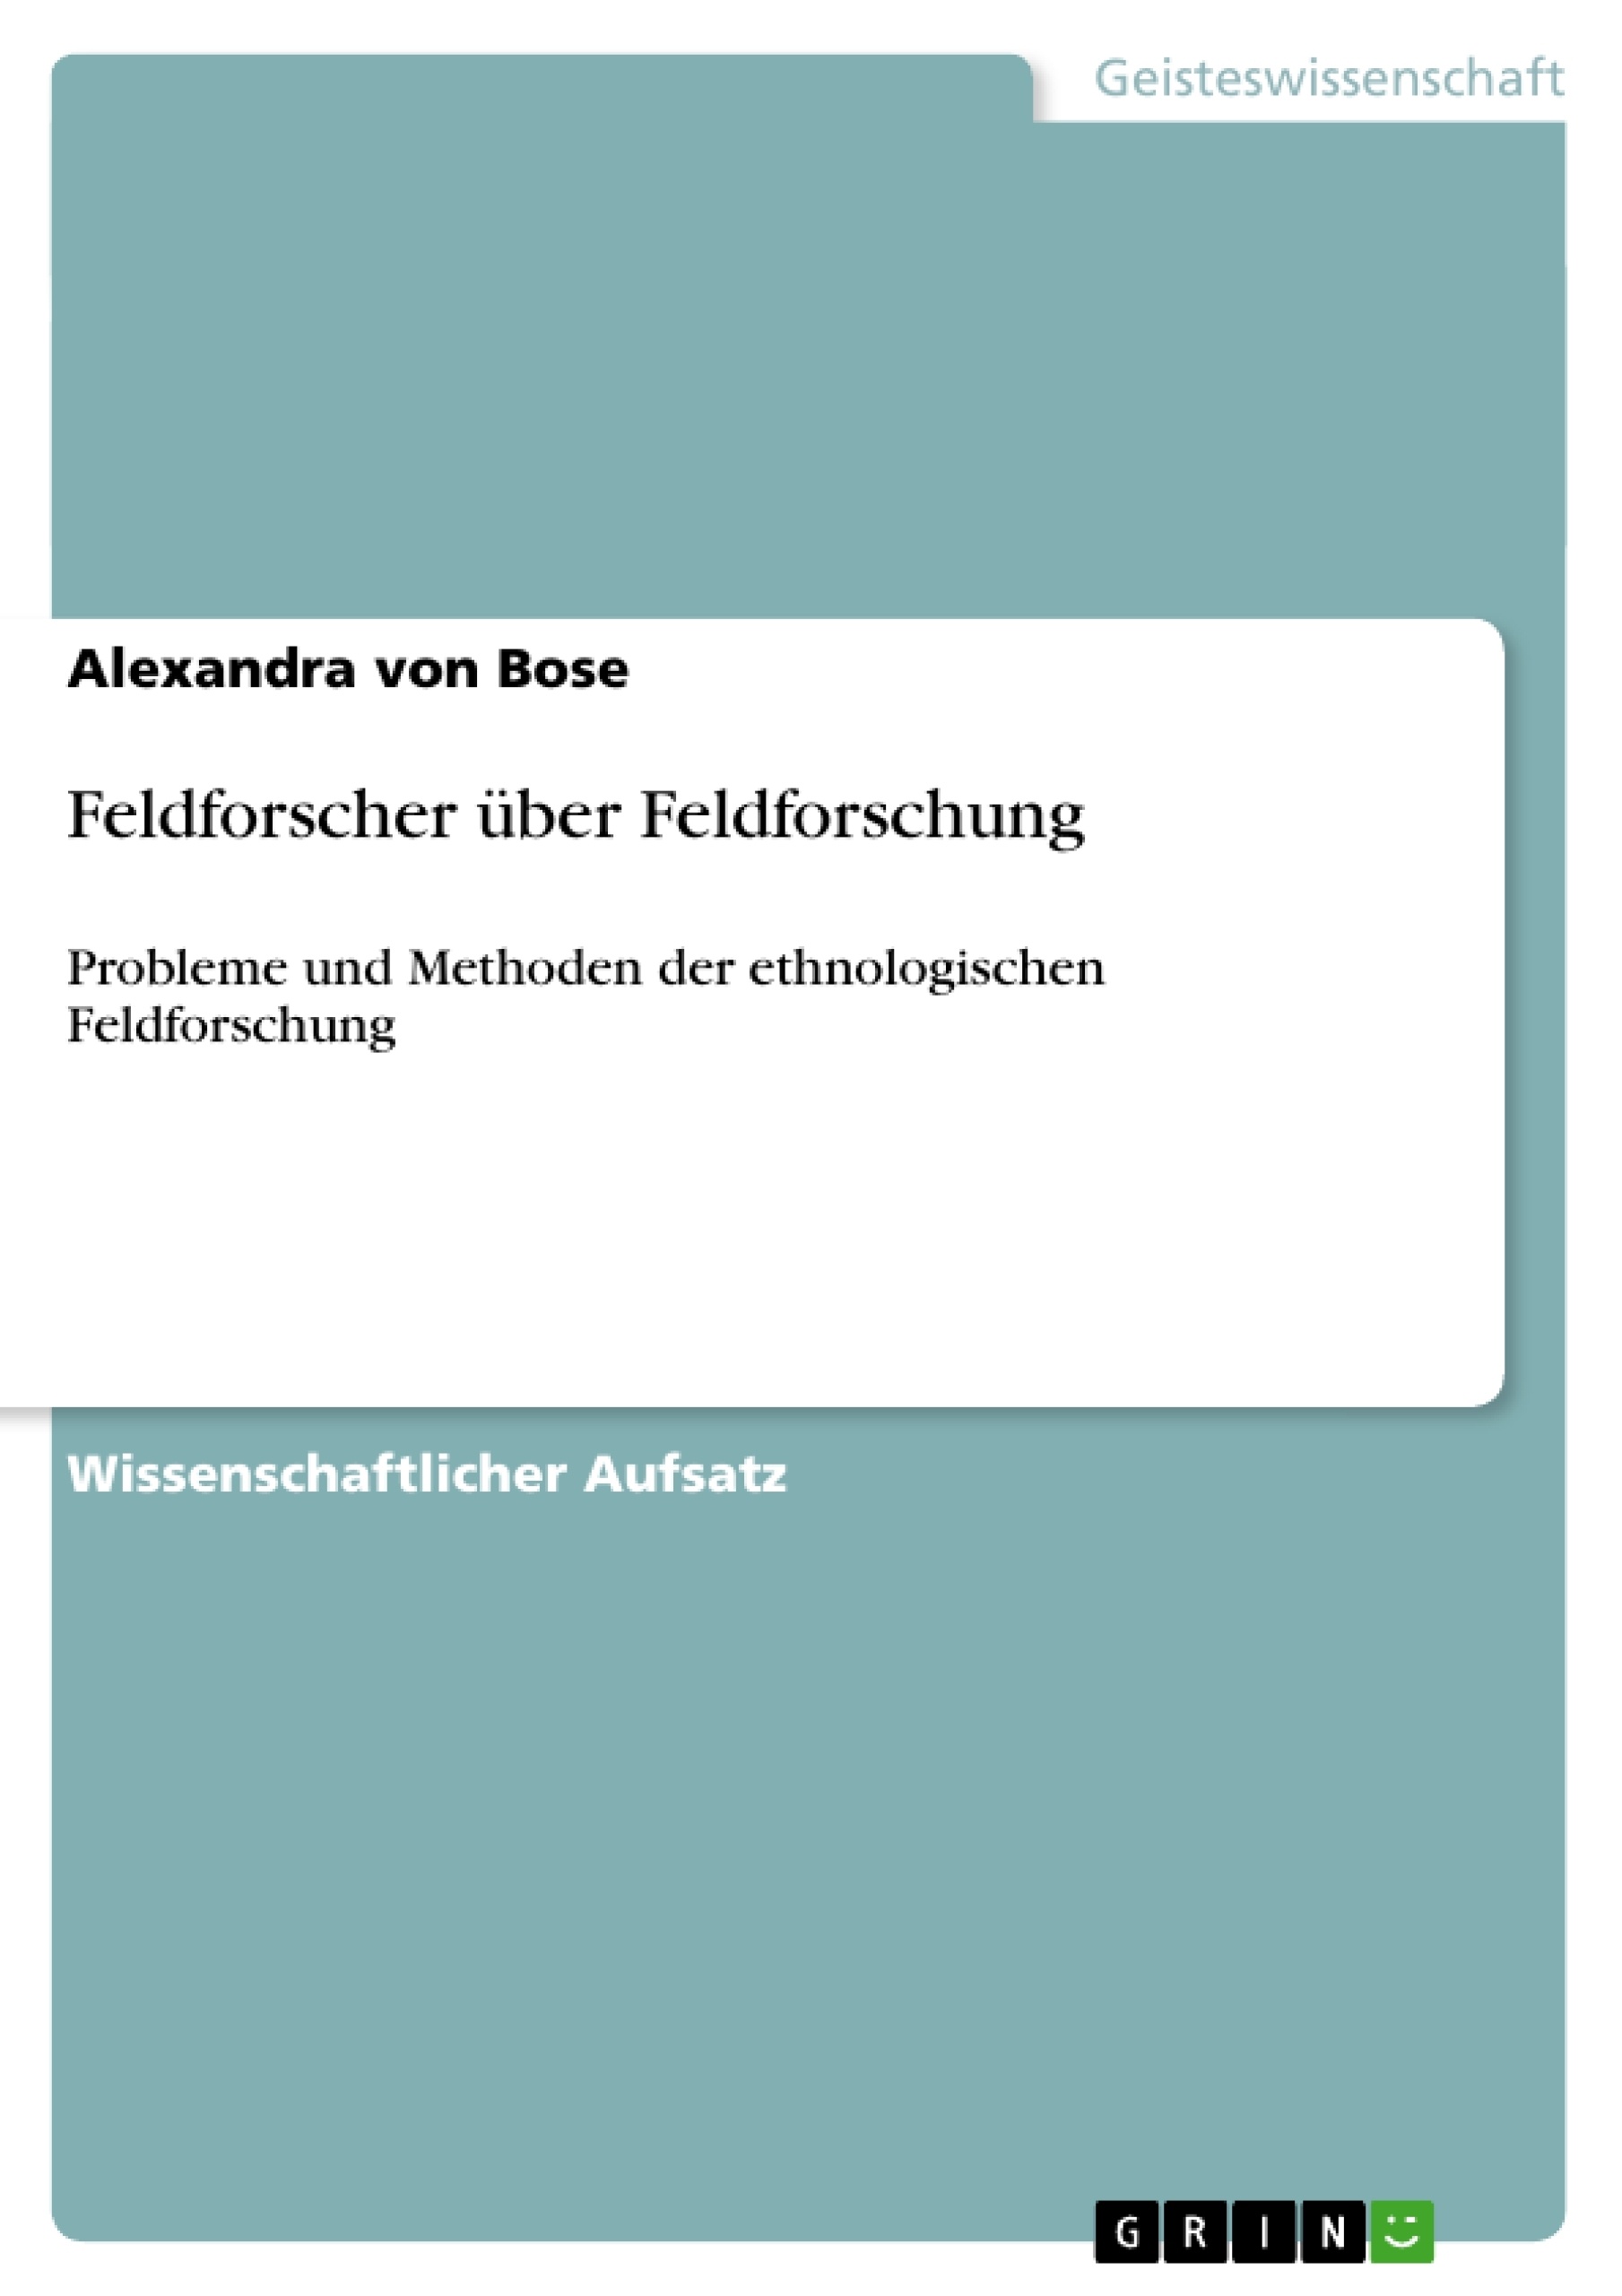 Title: Feldforscher über Feldforschung